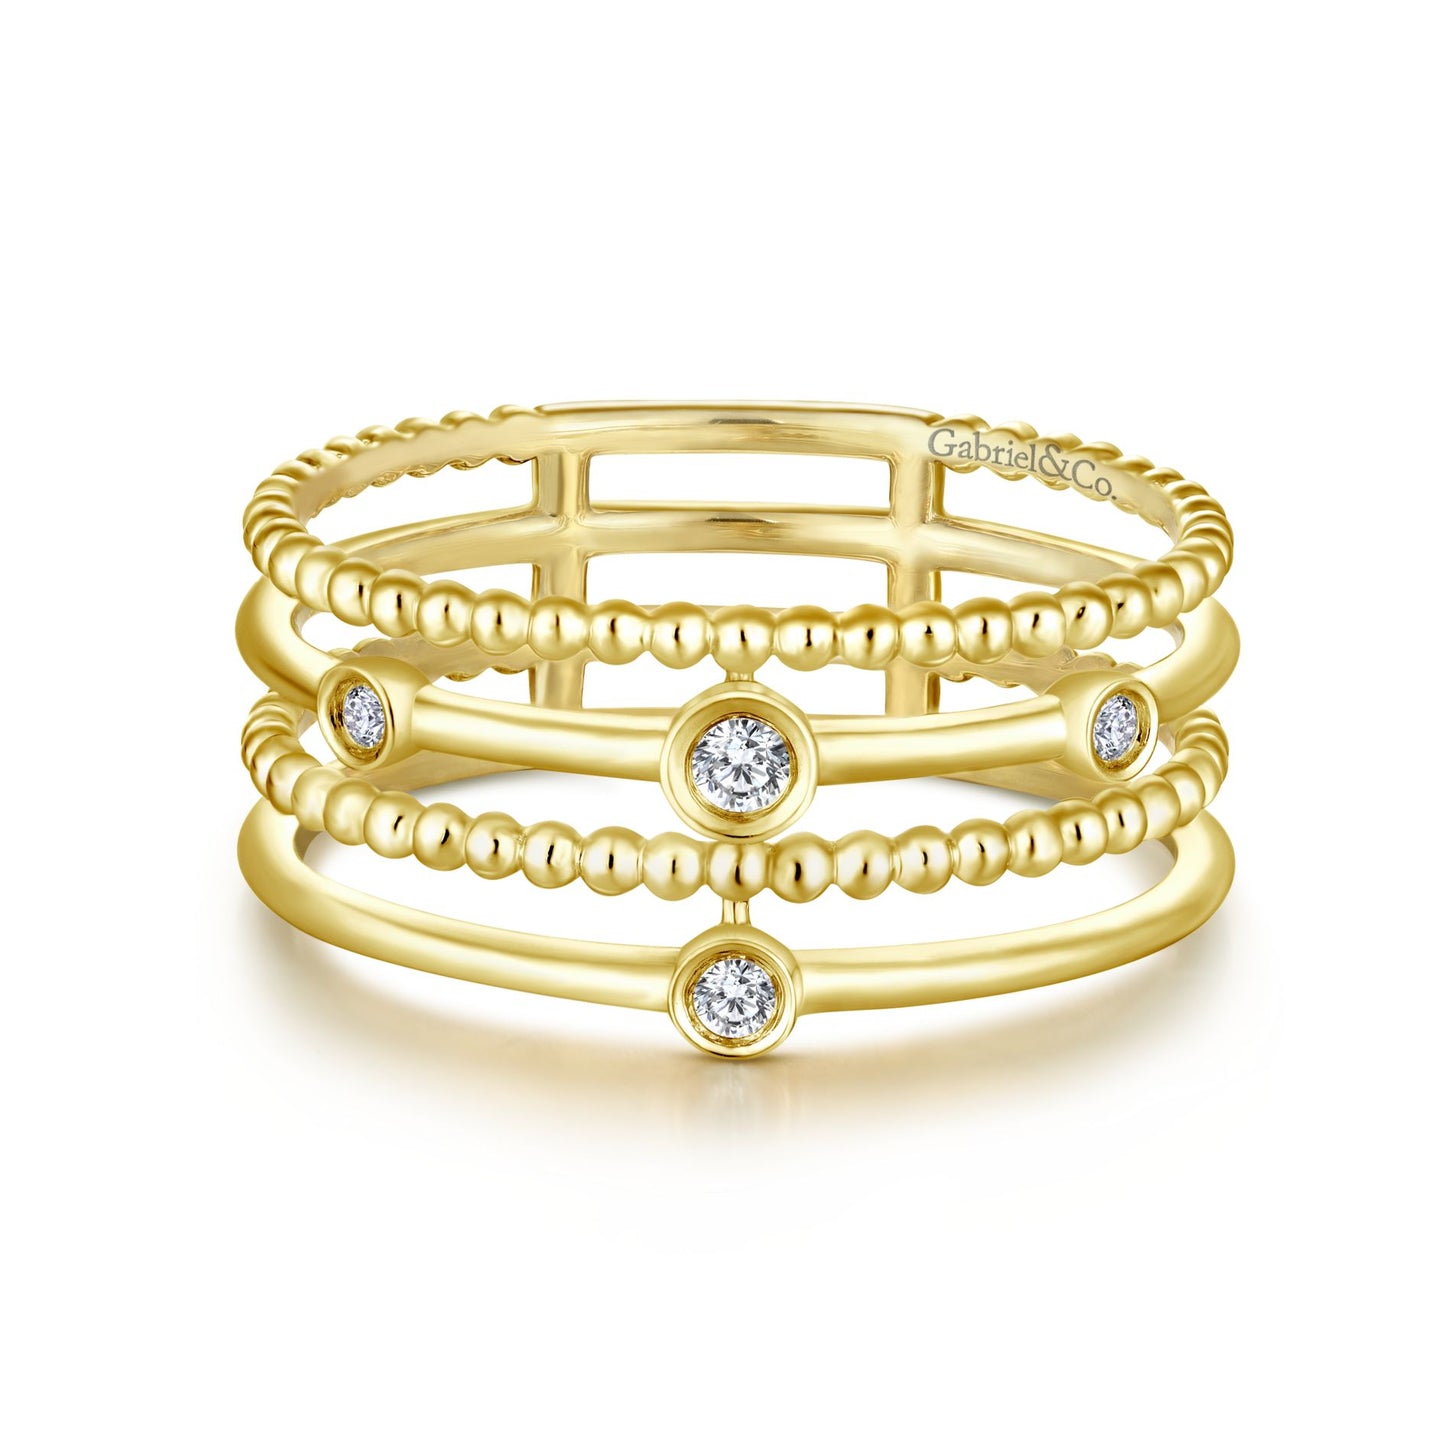 Gabriel & Co. .05TW  "Bujukan" Diamond Layered Ring in 14K Yellow Gold